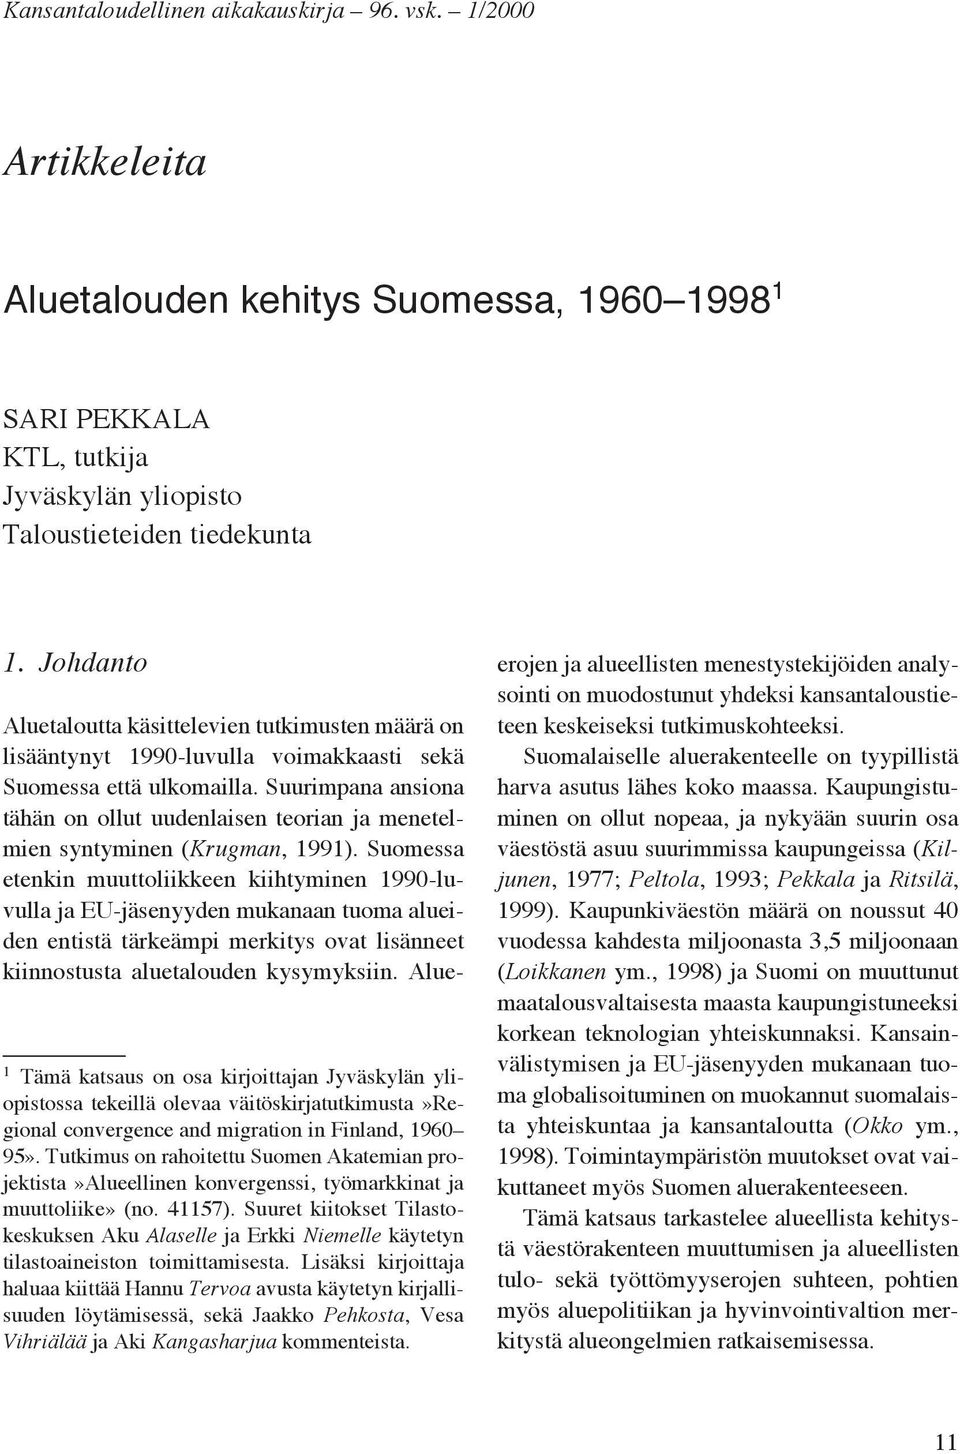 Tutkimus on rahoitettu Suomen Akatemian projektista»alueellinen konvergenssi, työmarkkinat ja muuttoliike» (no. 41157).